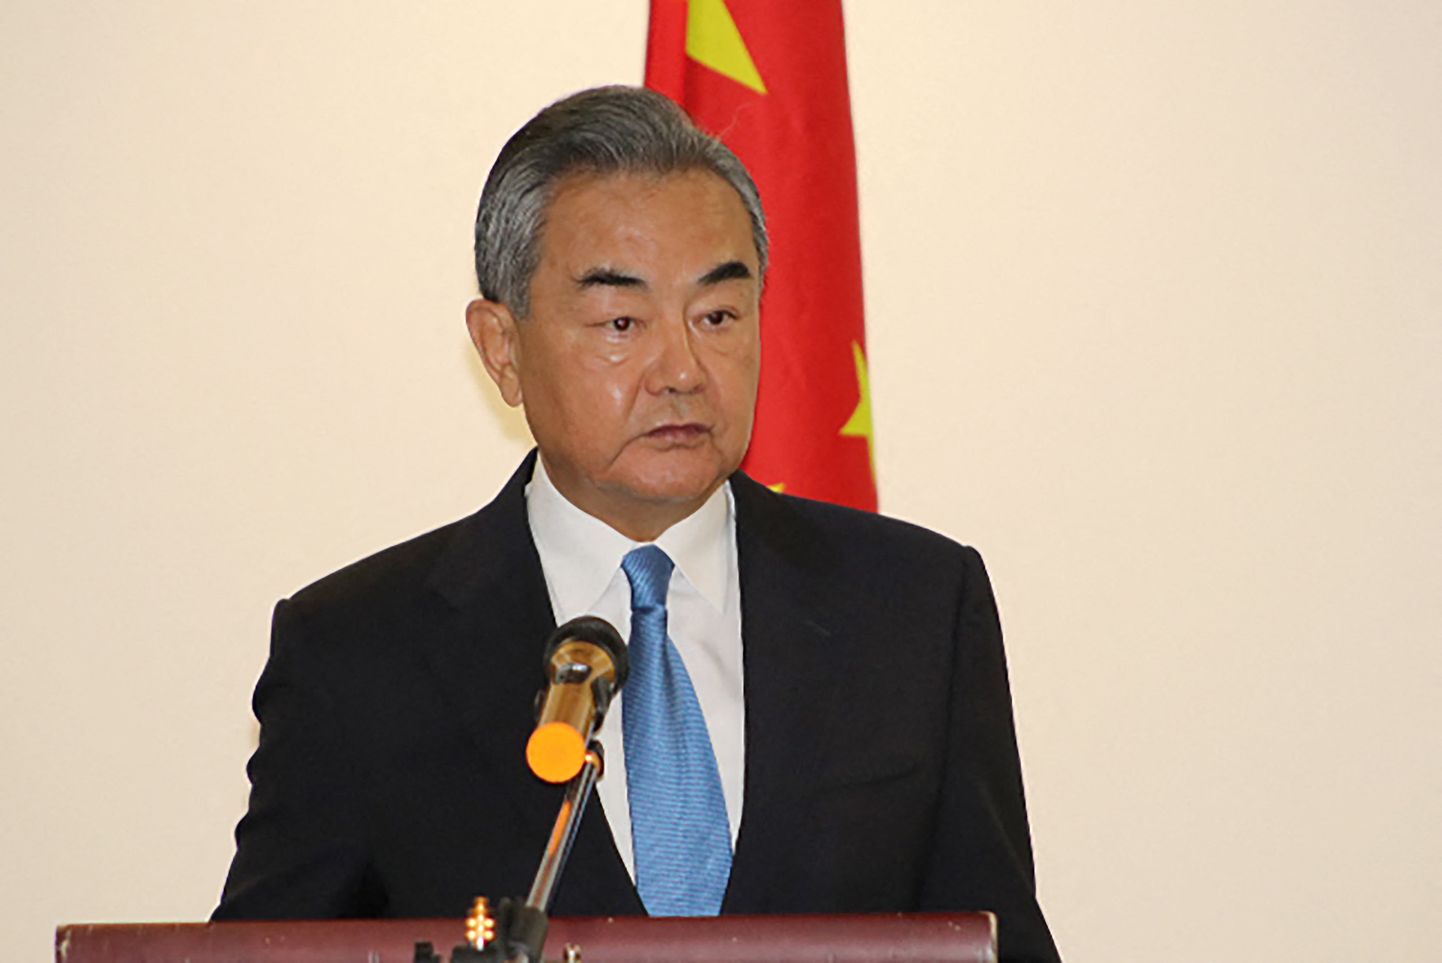 Hiina välisminister Wang Yi